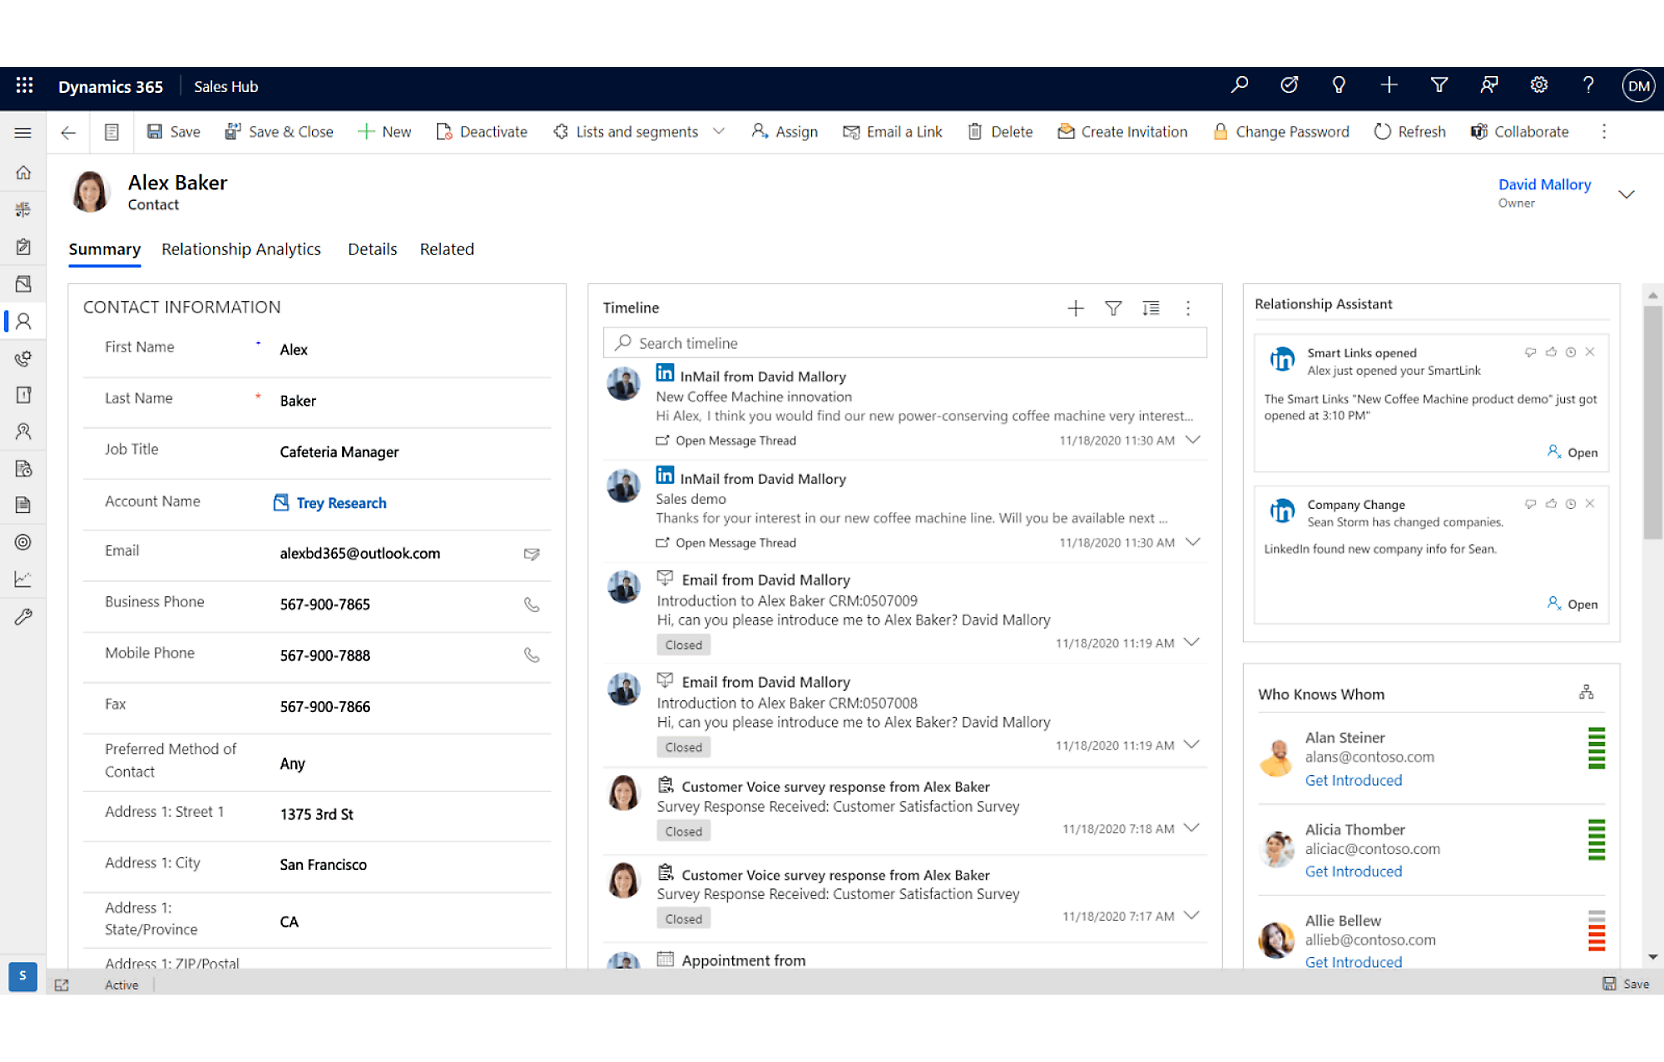 Captura de pantalla de una interfaz de Microsoft Dynamics 365 en la que se muestran los detalles de contacto, las interacciones de correo electrónico y una escala de tiempo de tareas para una persona llamada Alex Baker